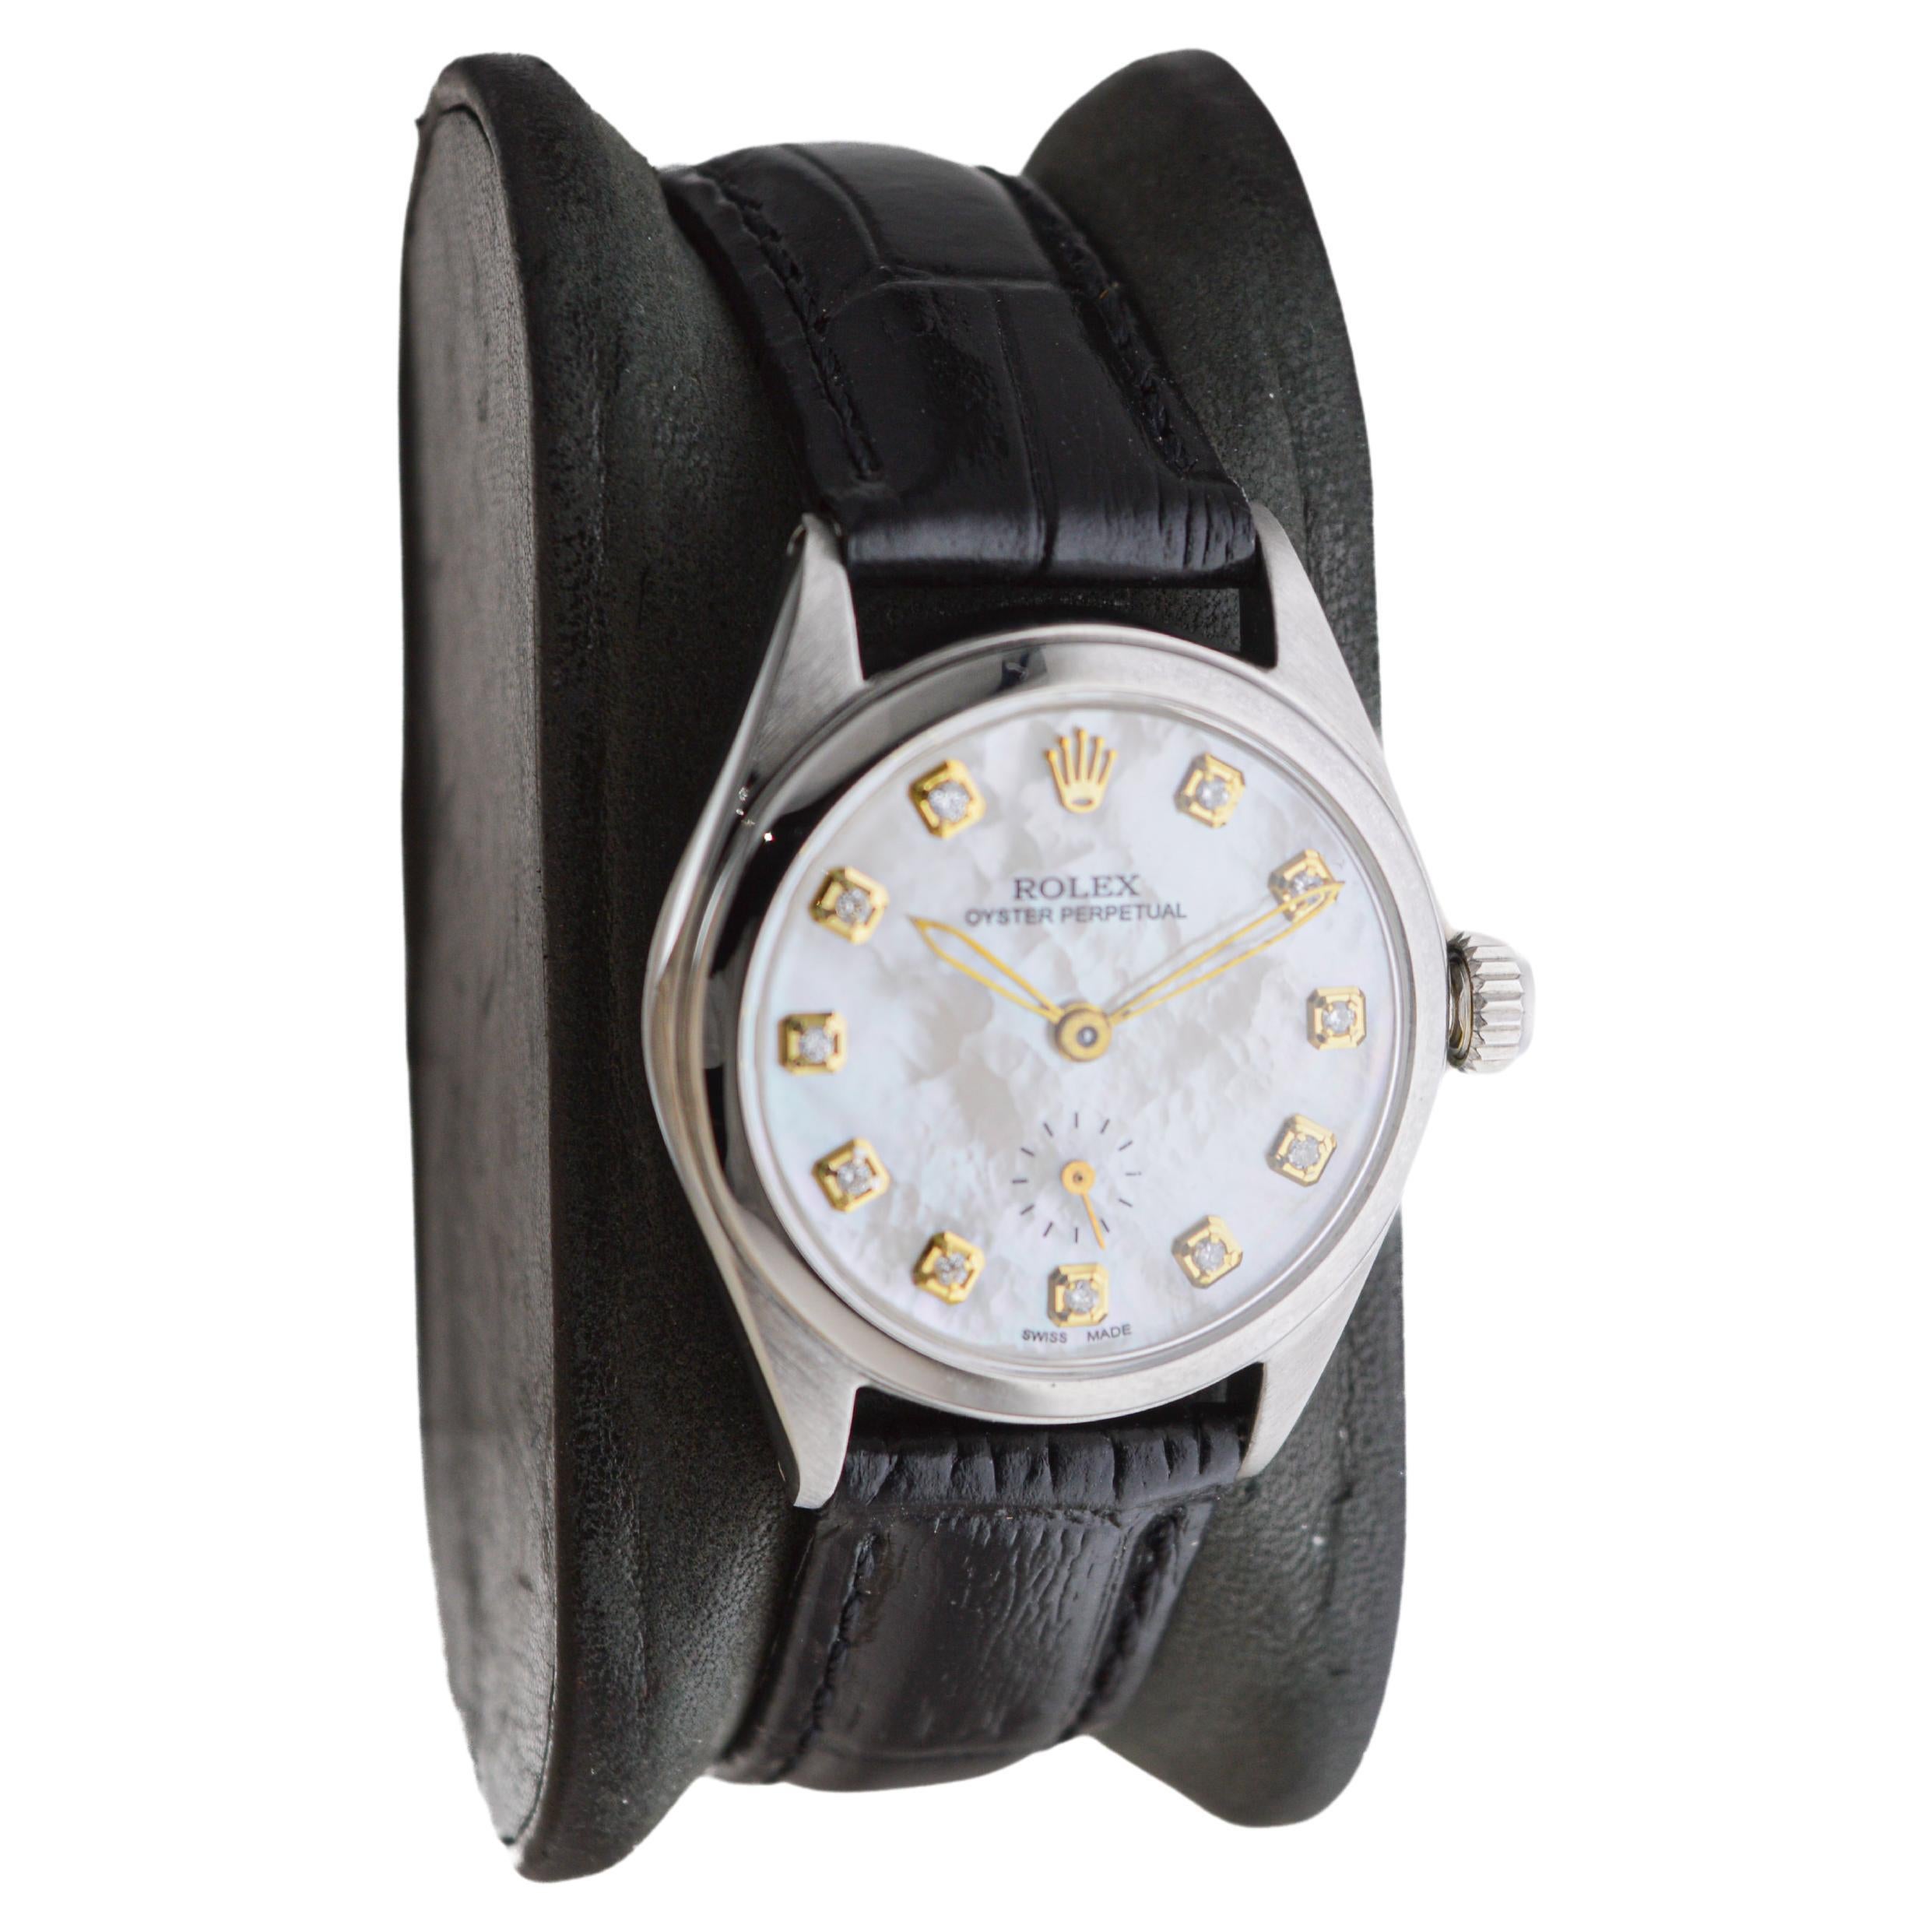 FABRIK / HAUS: Rolex Watch Company
STIL / REFERENZ: Bubble Back / Referenz 6006
METALL / MATERIAL: Rostfreier Stahl
CIRCA / JAHR: 1953
ABMESSUNGEN / GRÖSSE: Länge 36mm X Durchmesser 29mm
UHRWERK / KALIBER: Ewiger Aufzug / 17 Jewels 
ZIFFERBLATT /